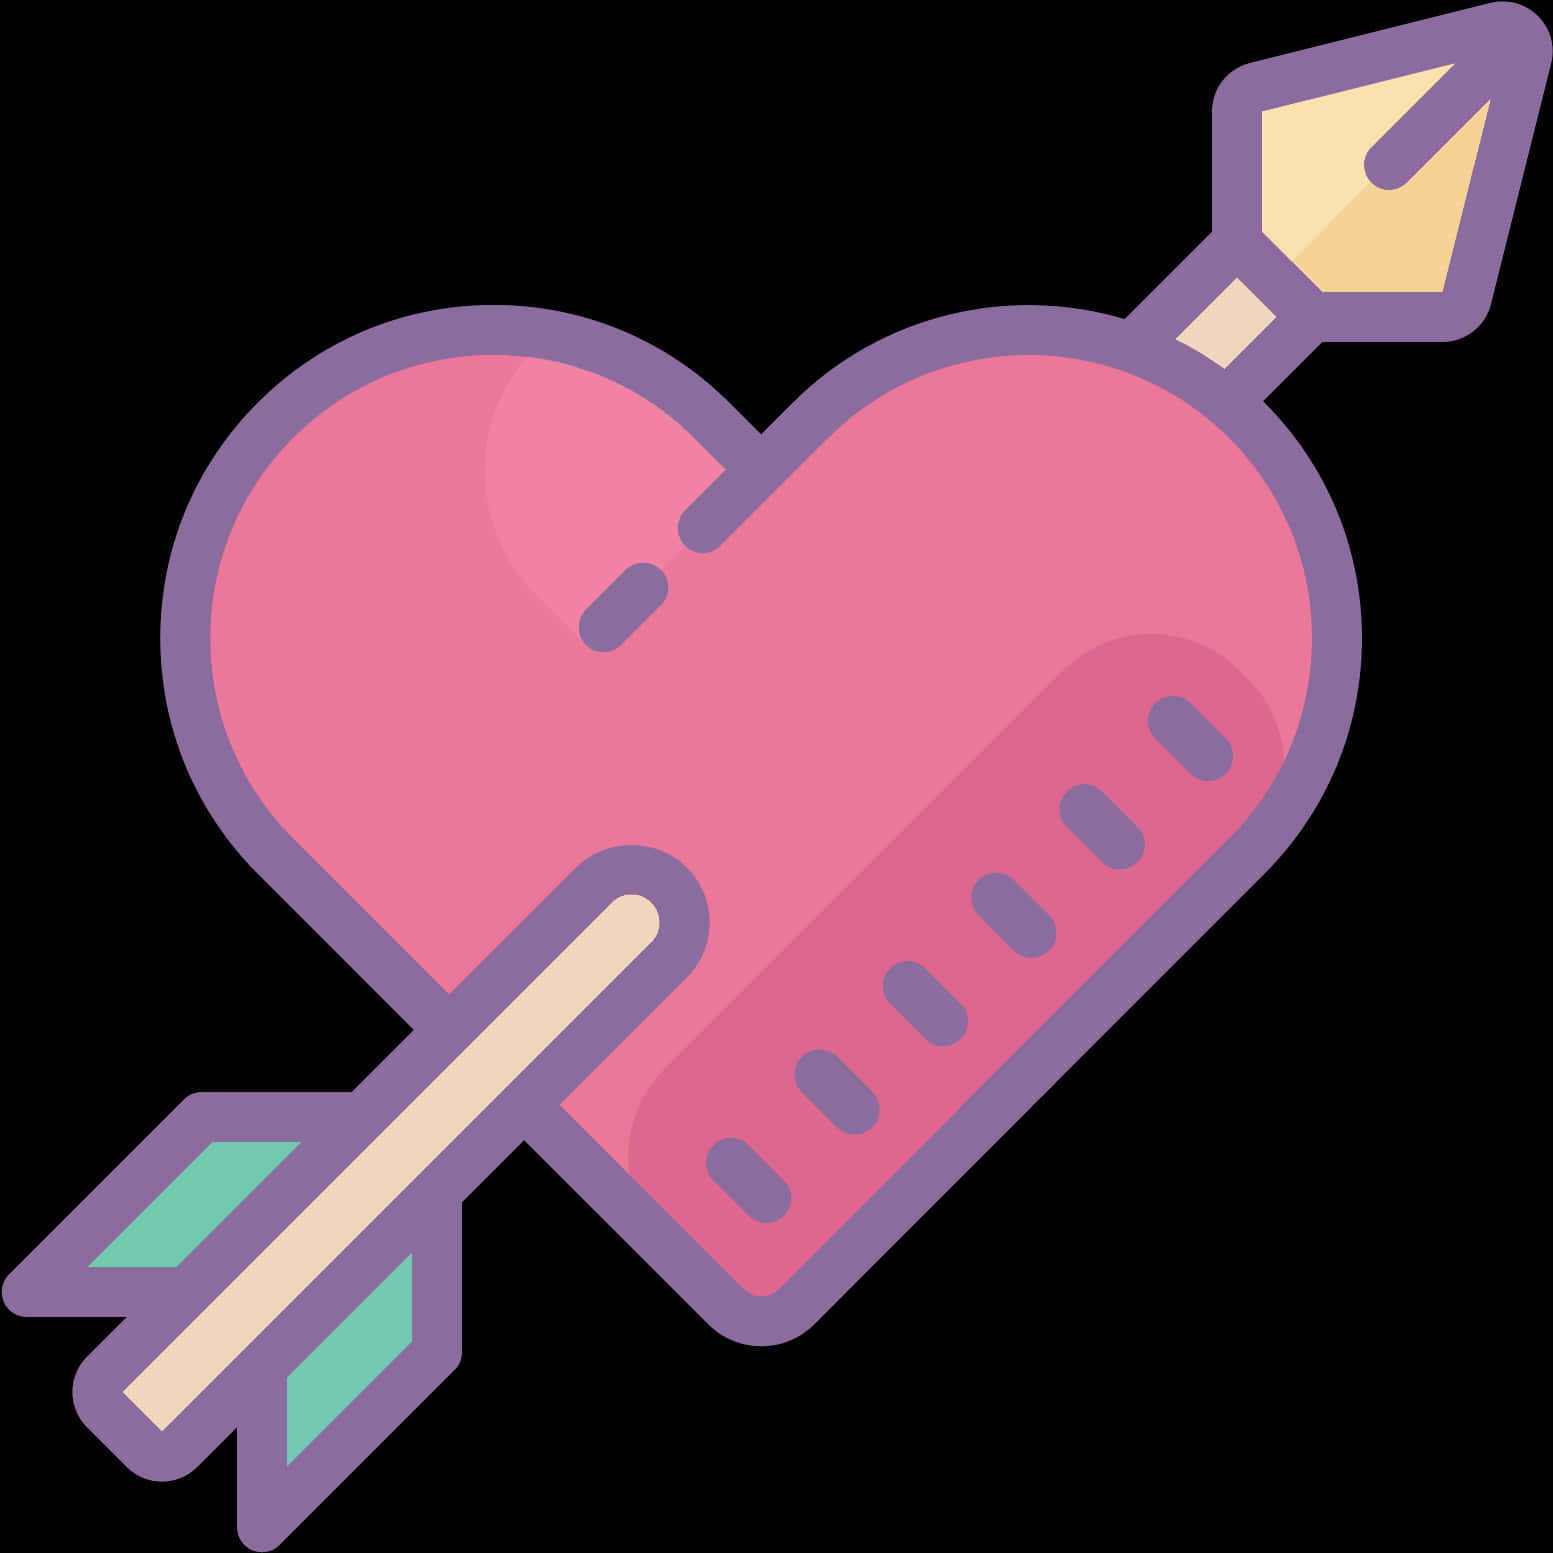 A Heart With An Arrow